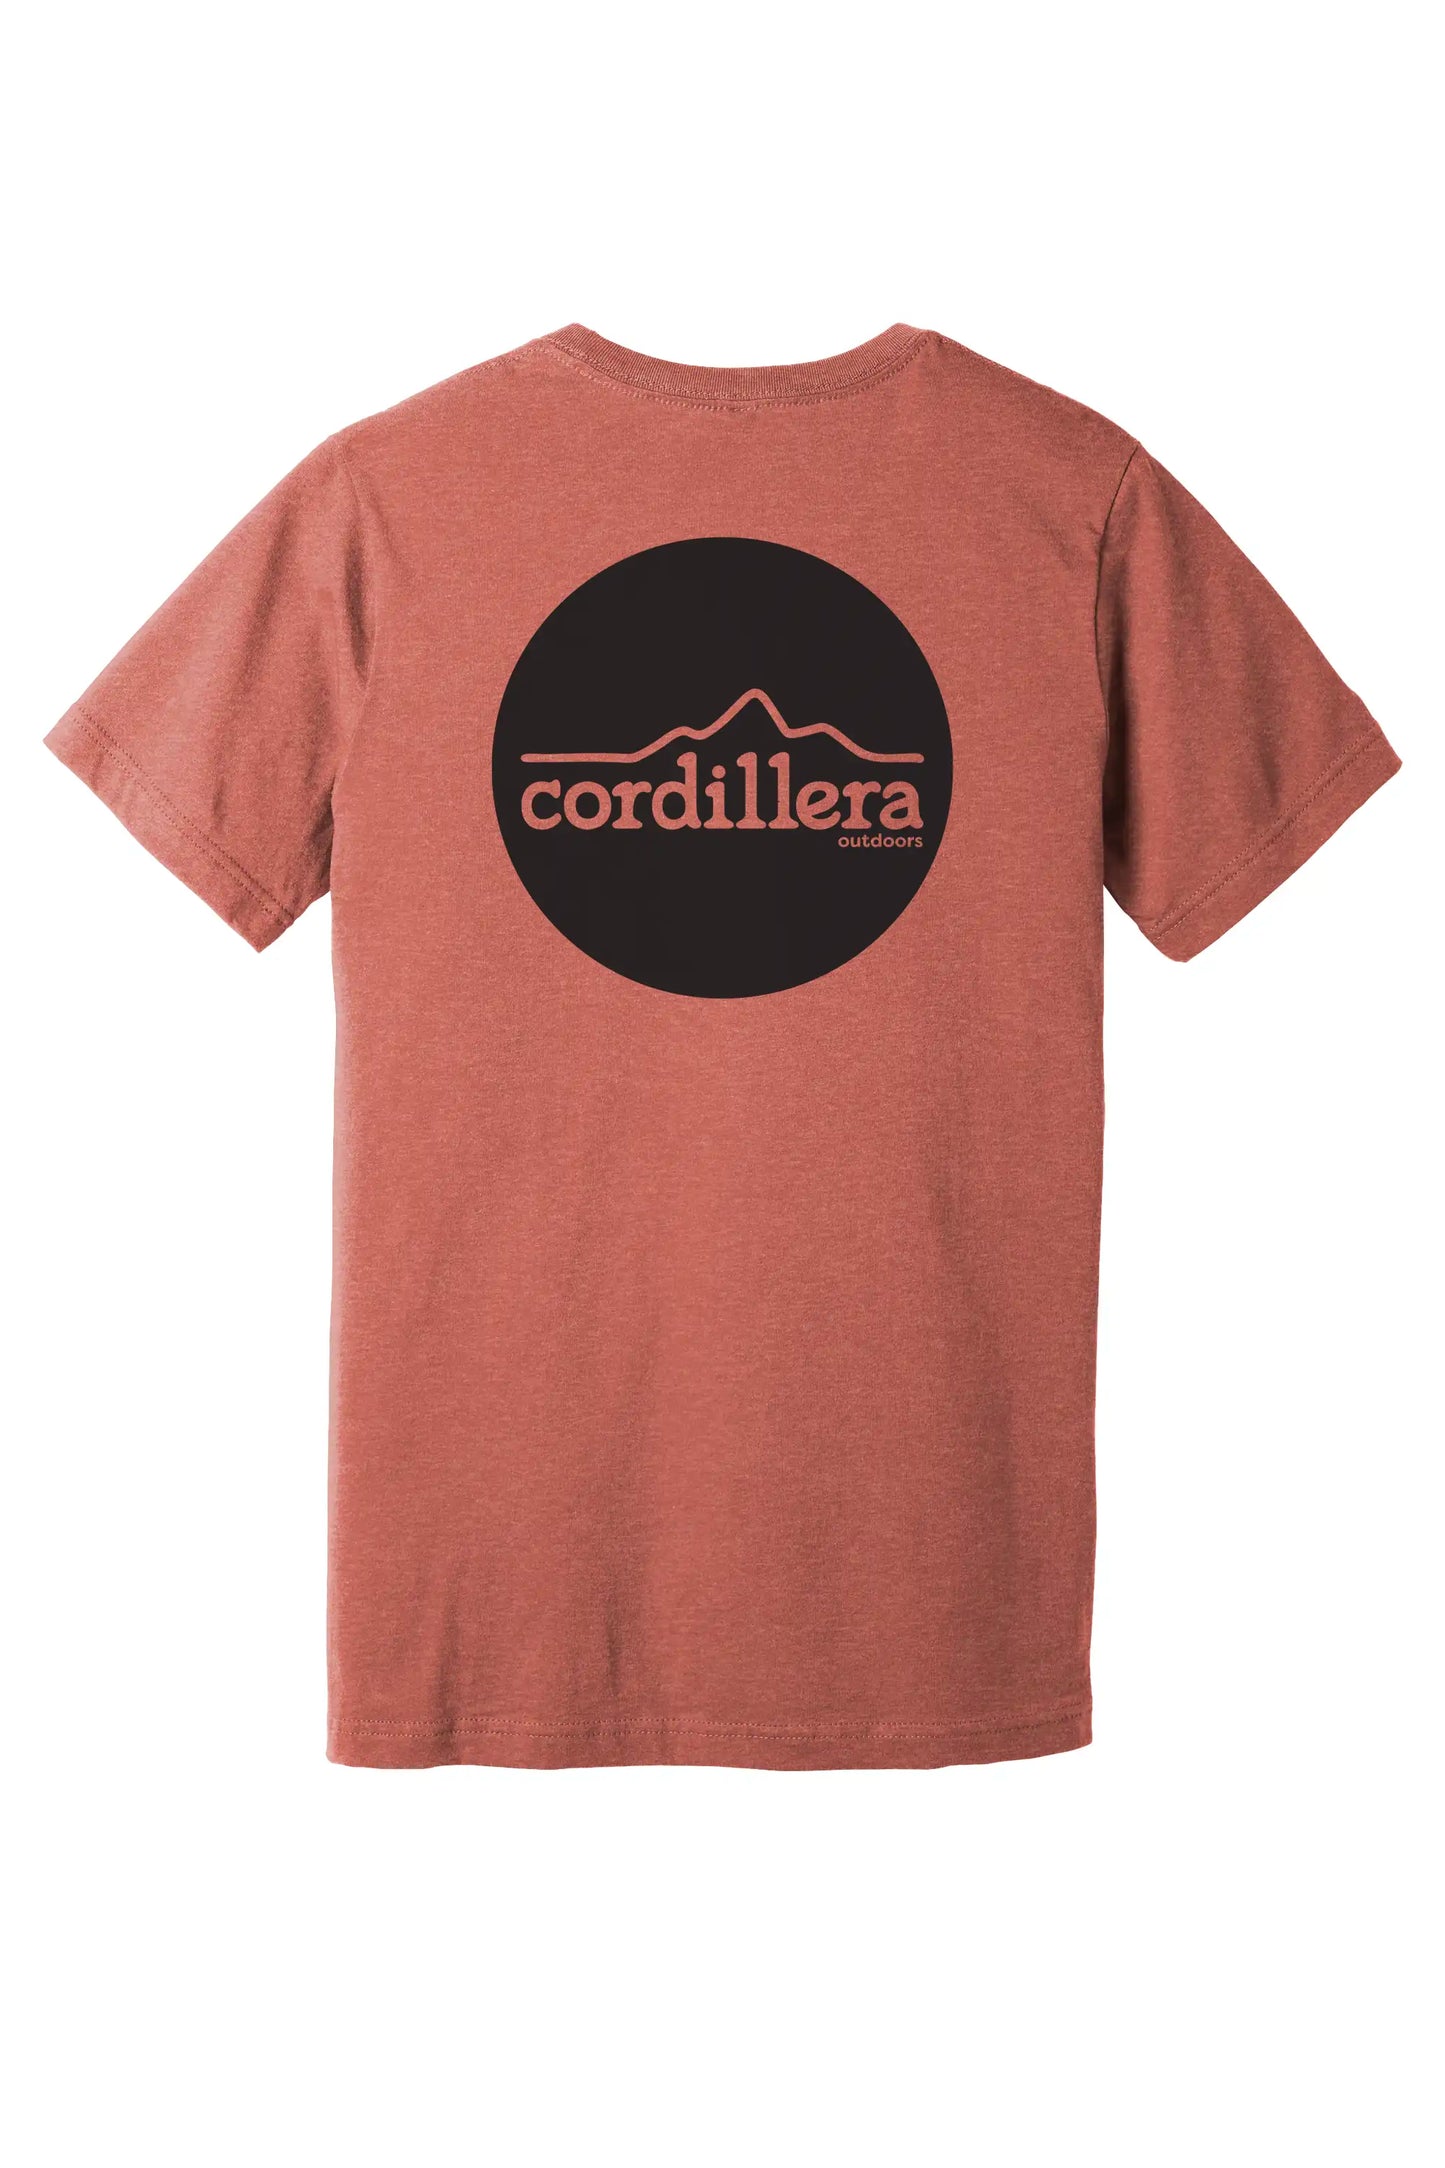 Cordillera Outdoors Classic Round Logo - Premium Tee